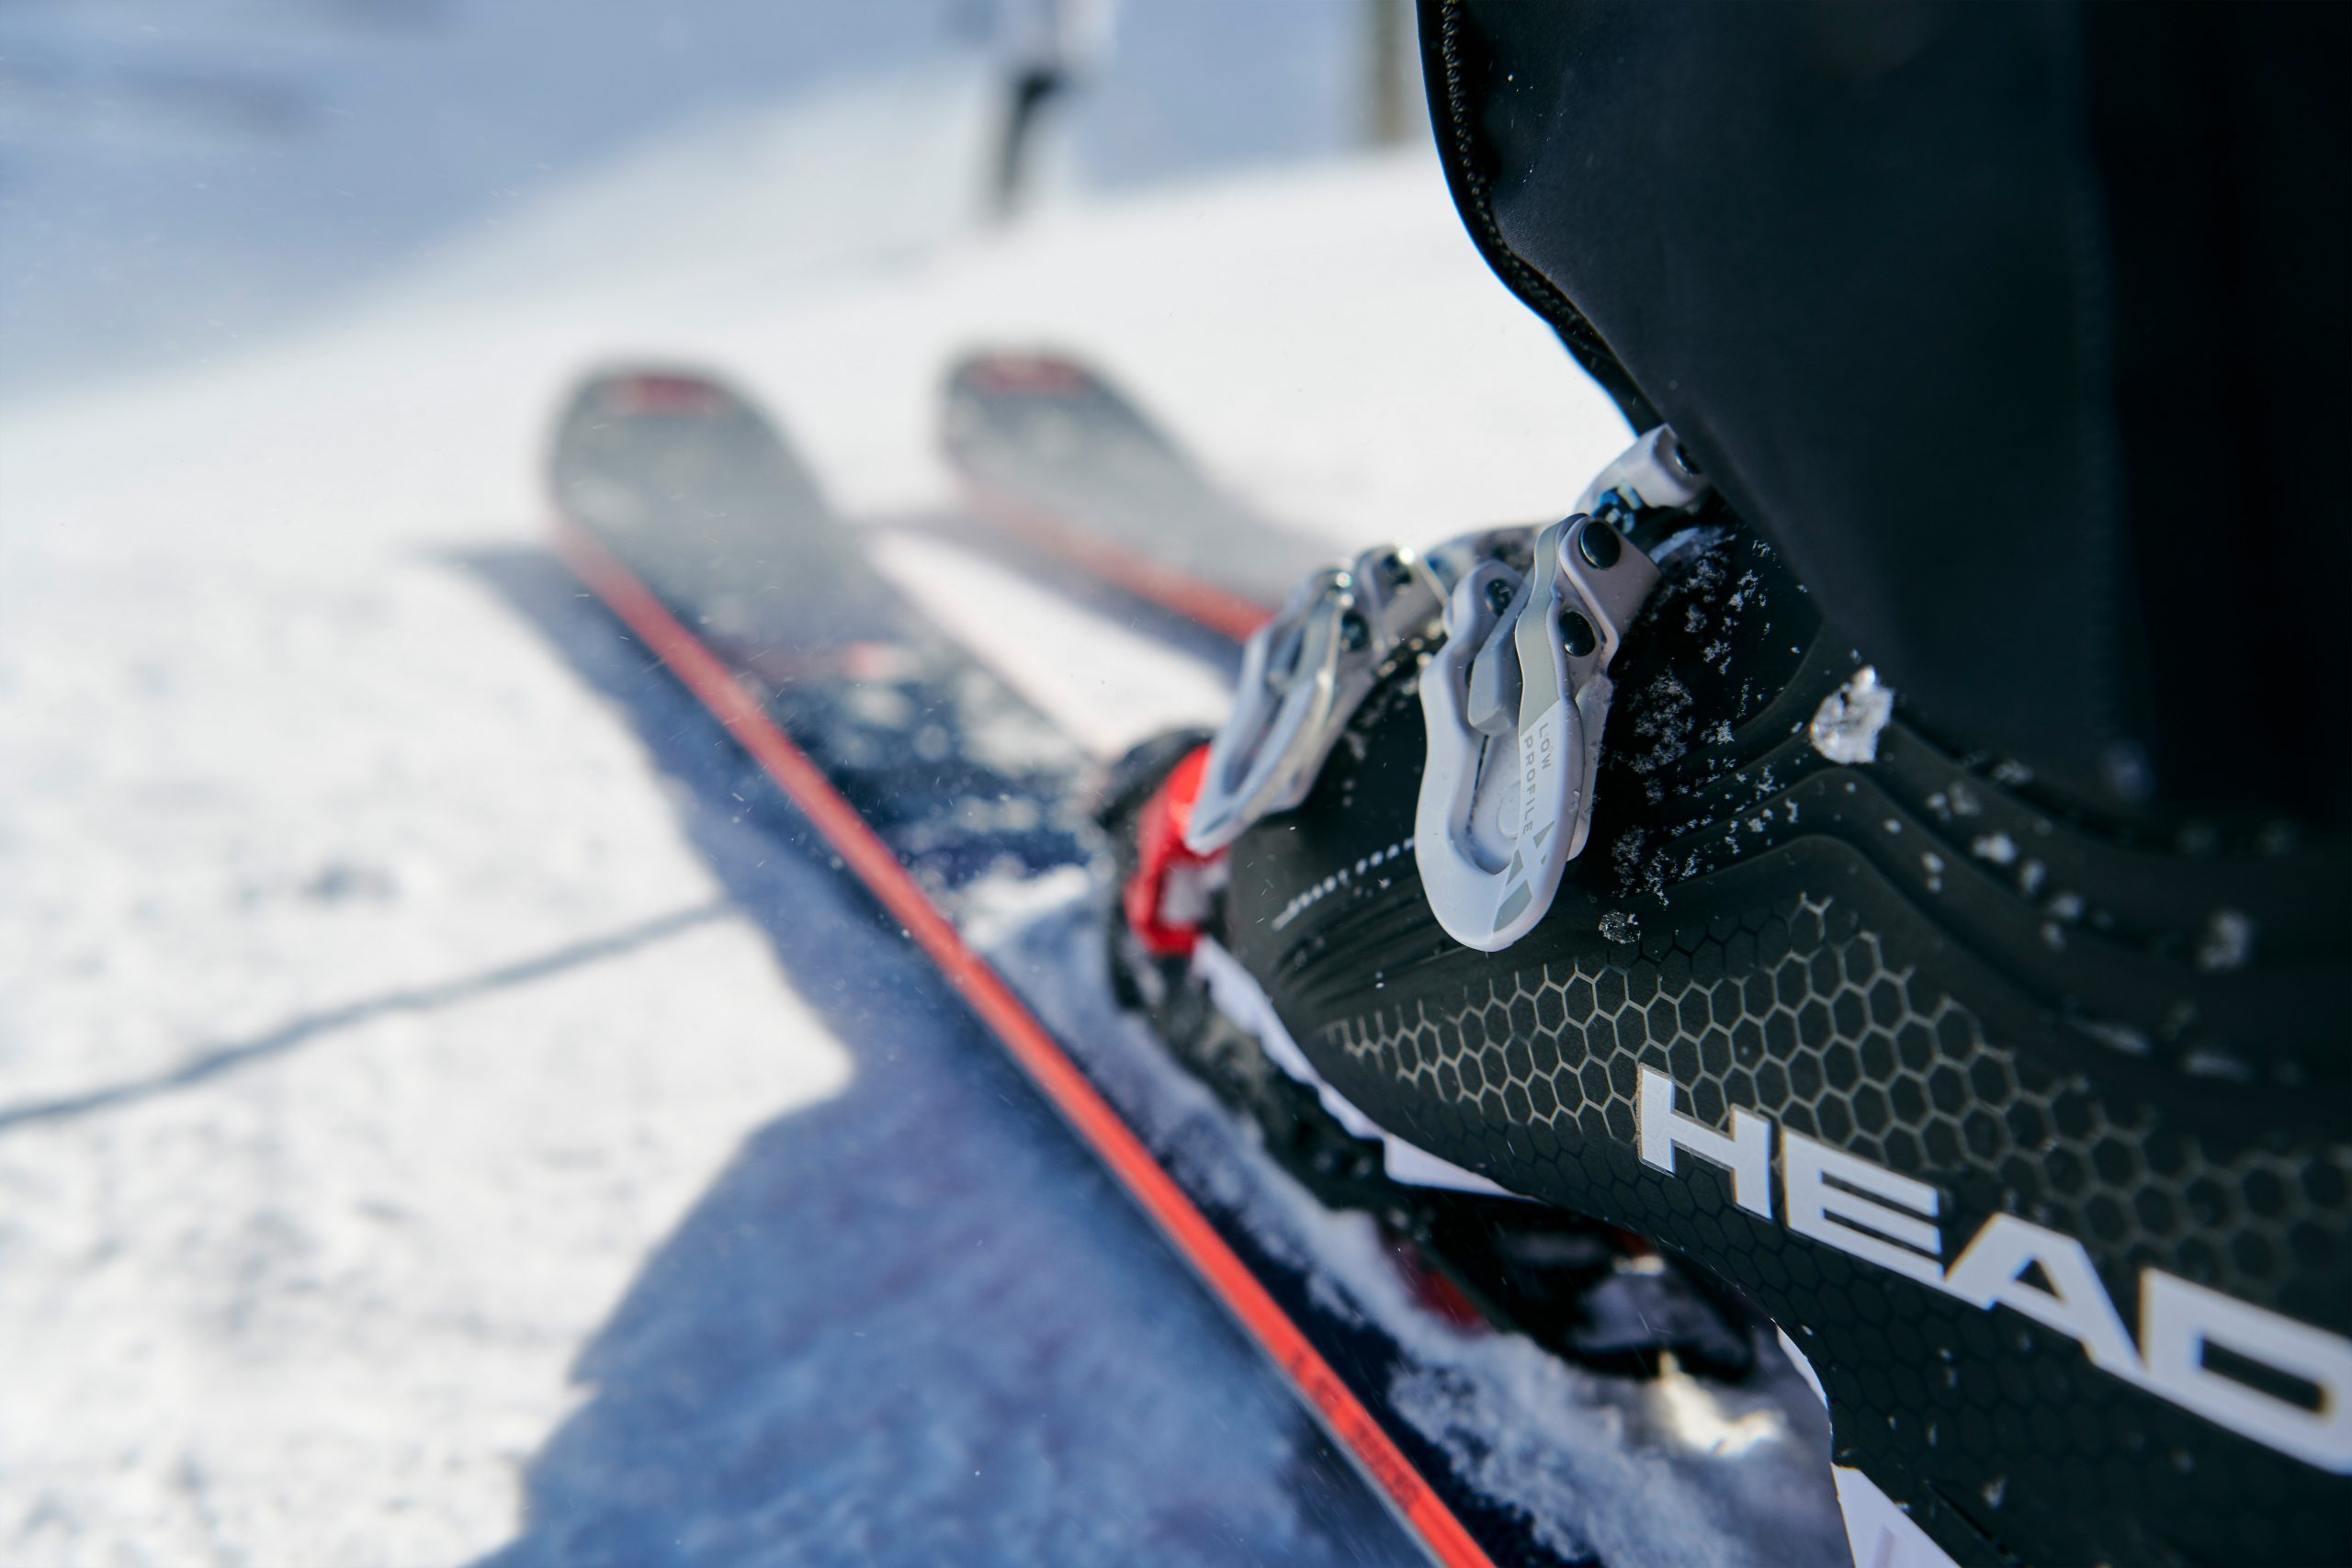 Botas esquí Head negras, fijaciones y esquís